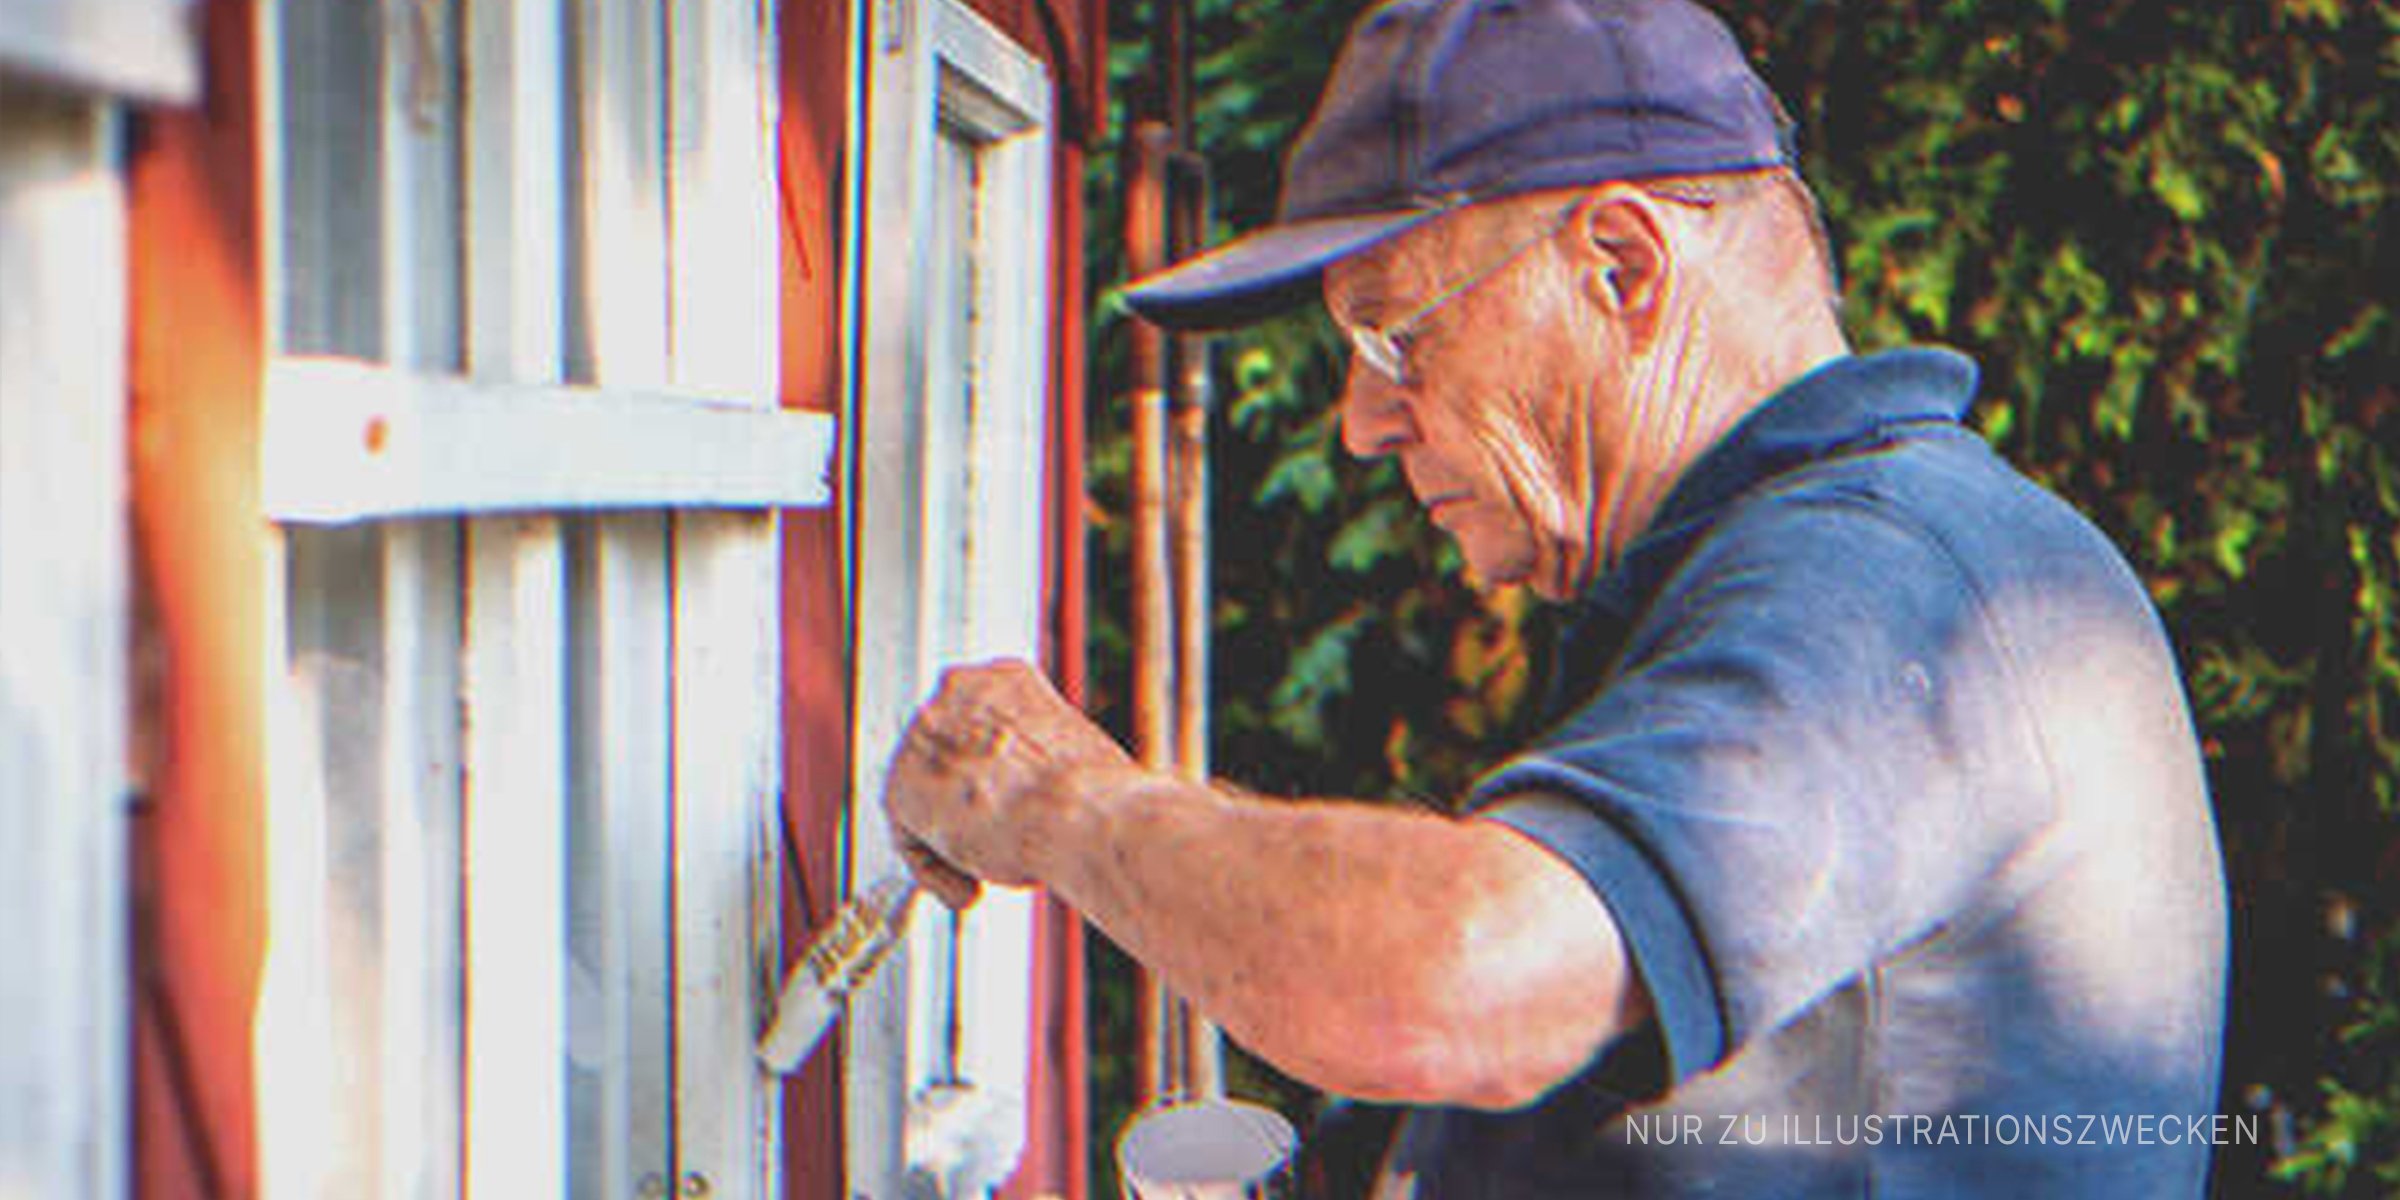 Mann streicht Fensterbank. | Quelle: Shutterstock